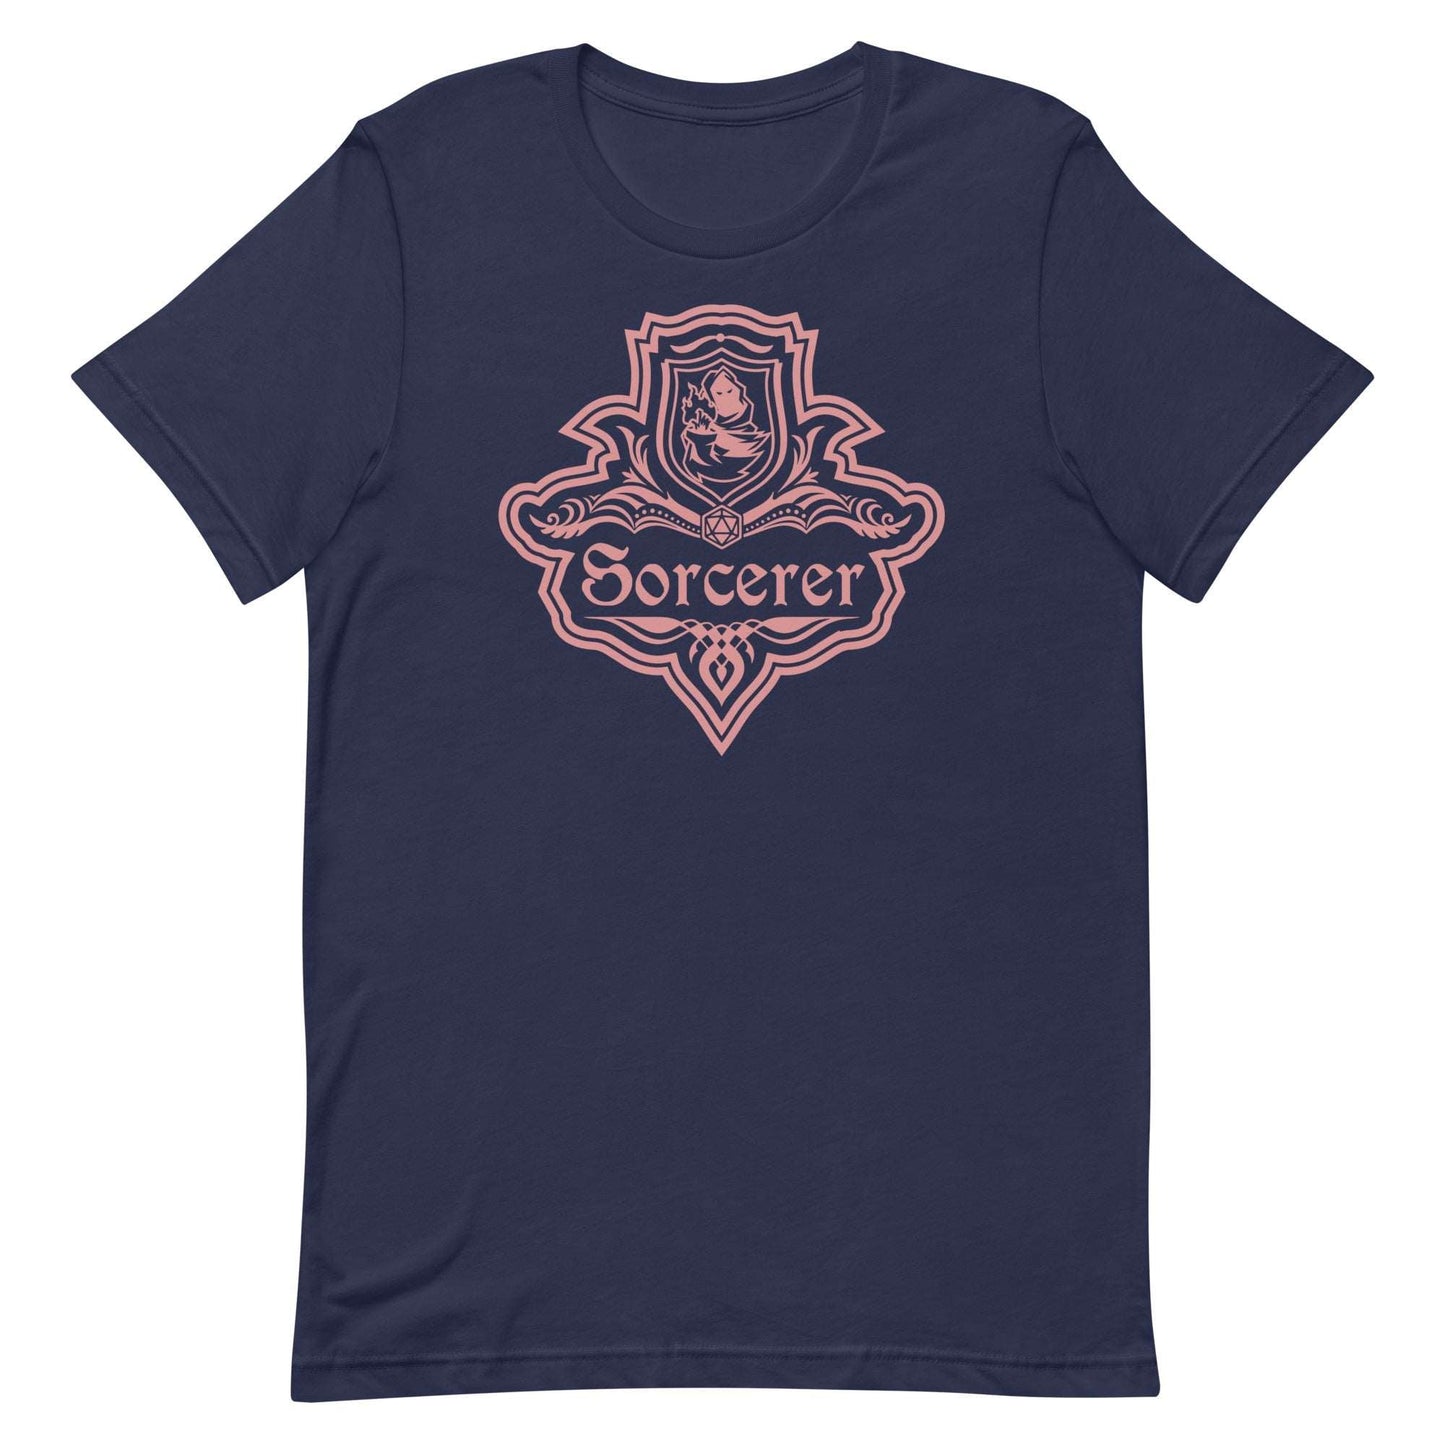 DnD Sorcerer Class Emblem T-Shirt - Dungeons & Dragons Sorcerer Tee T-Shirt Navy / S